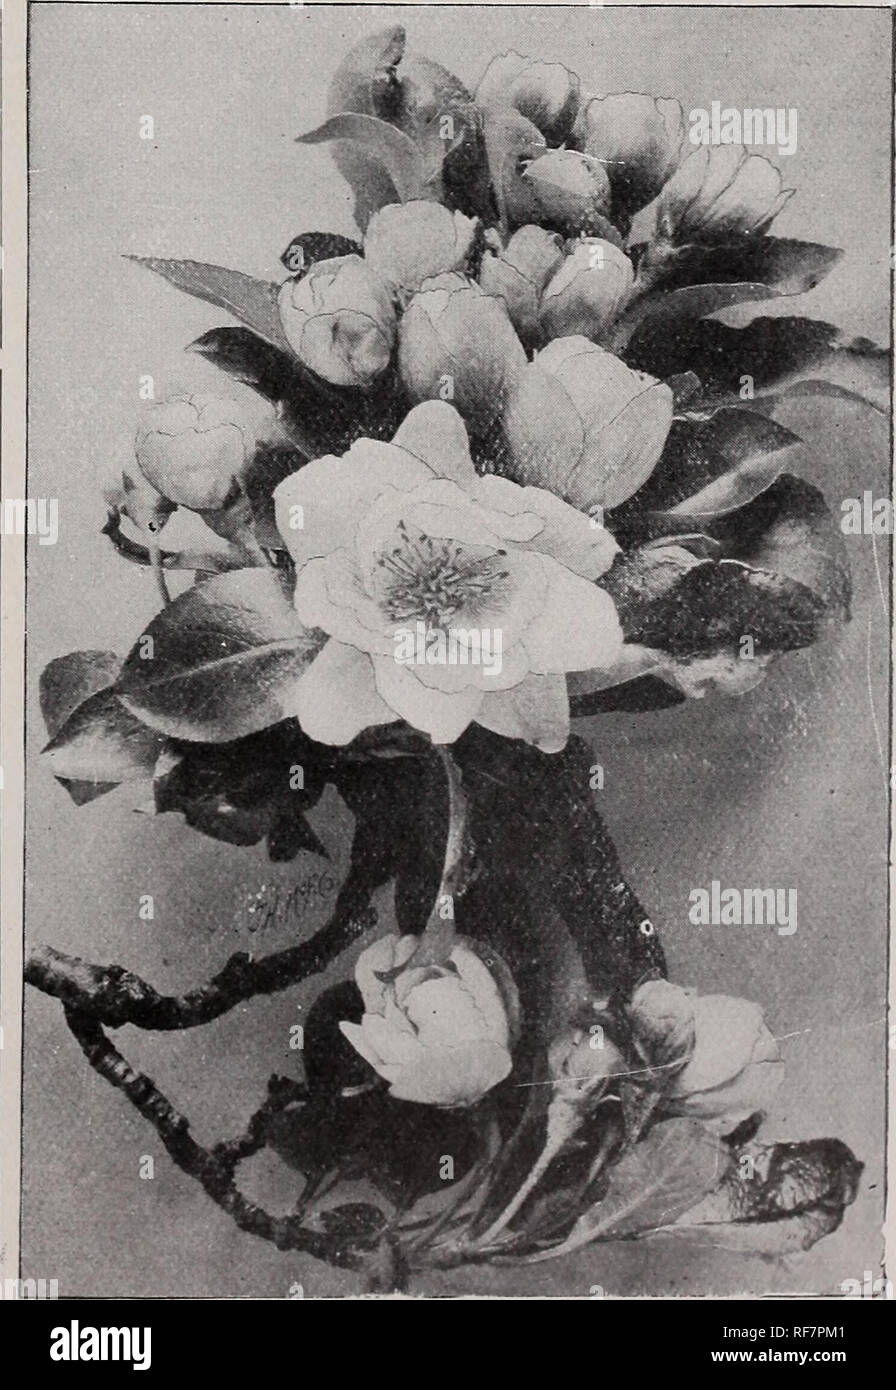 Pflanzen_ornamentale_kataloge -Fotos und -Bildmaterial in hoher Auflösung -  Seite 400 - Alamy